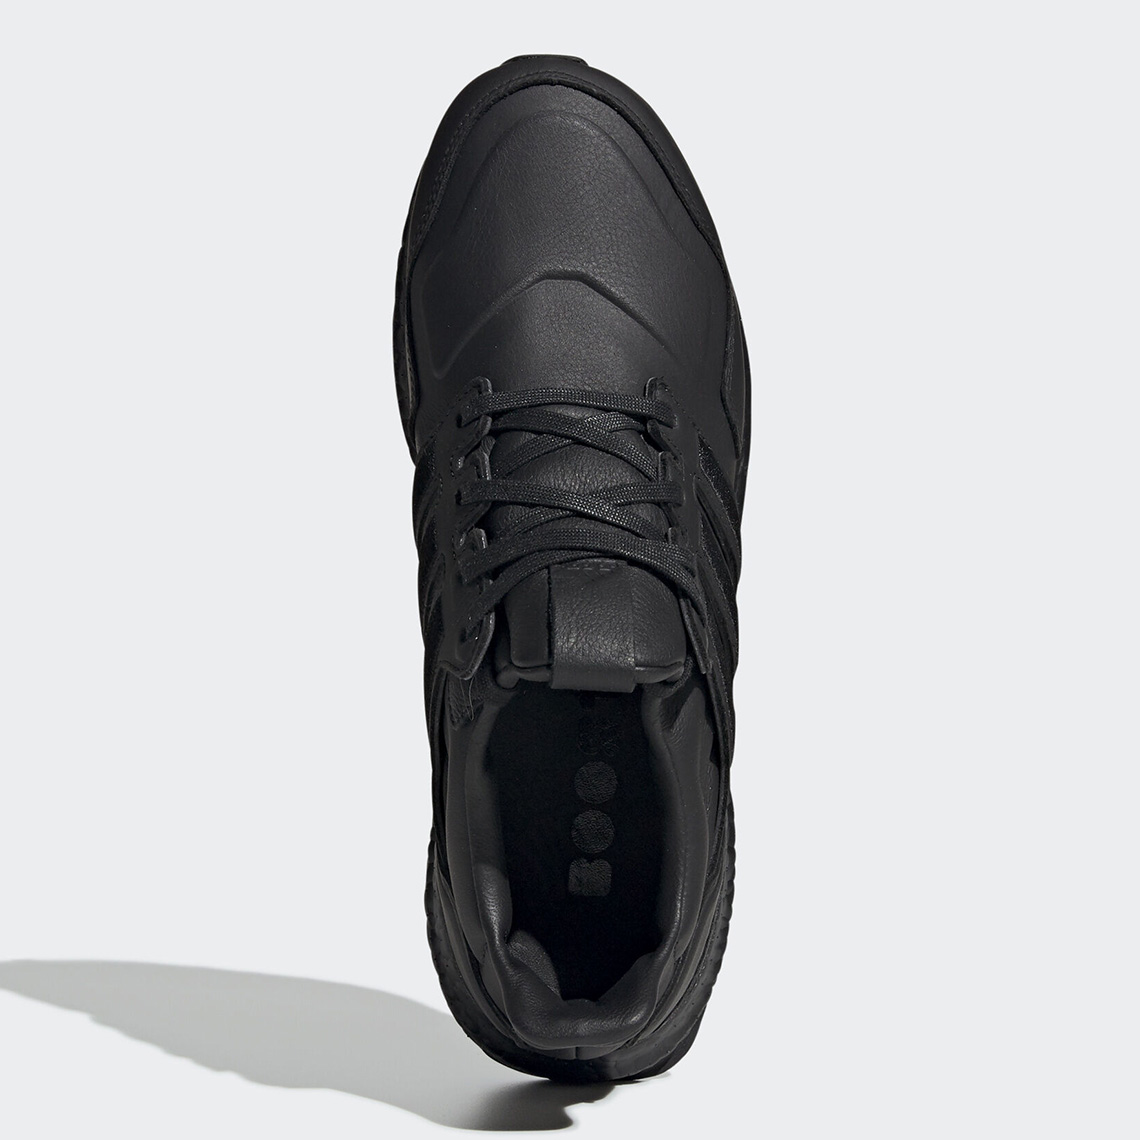 Adidas Ultra Boost Leather Black Ef0901 2